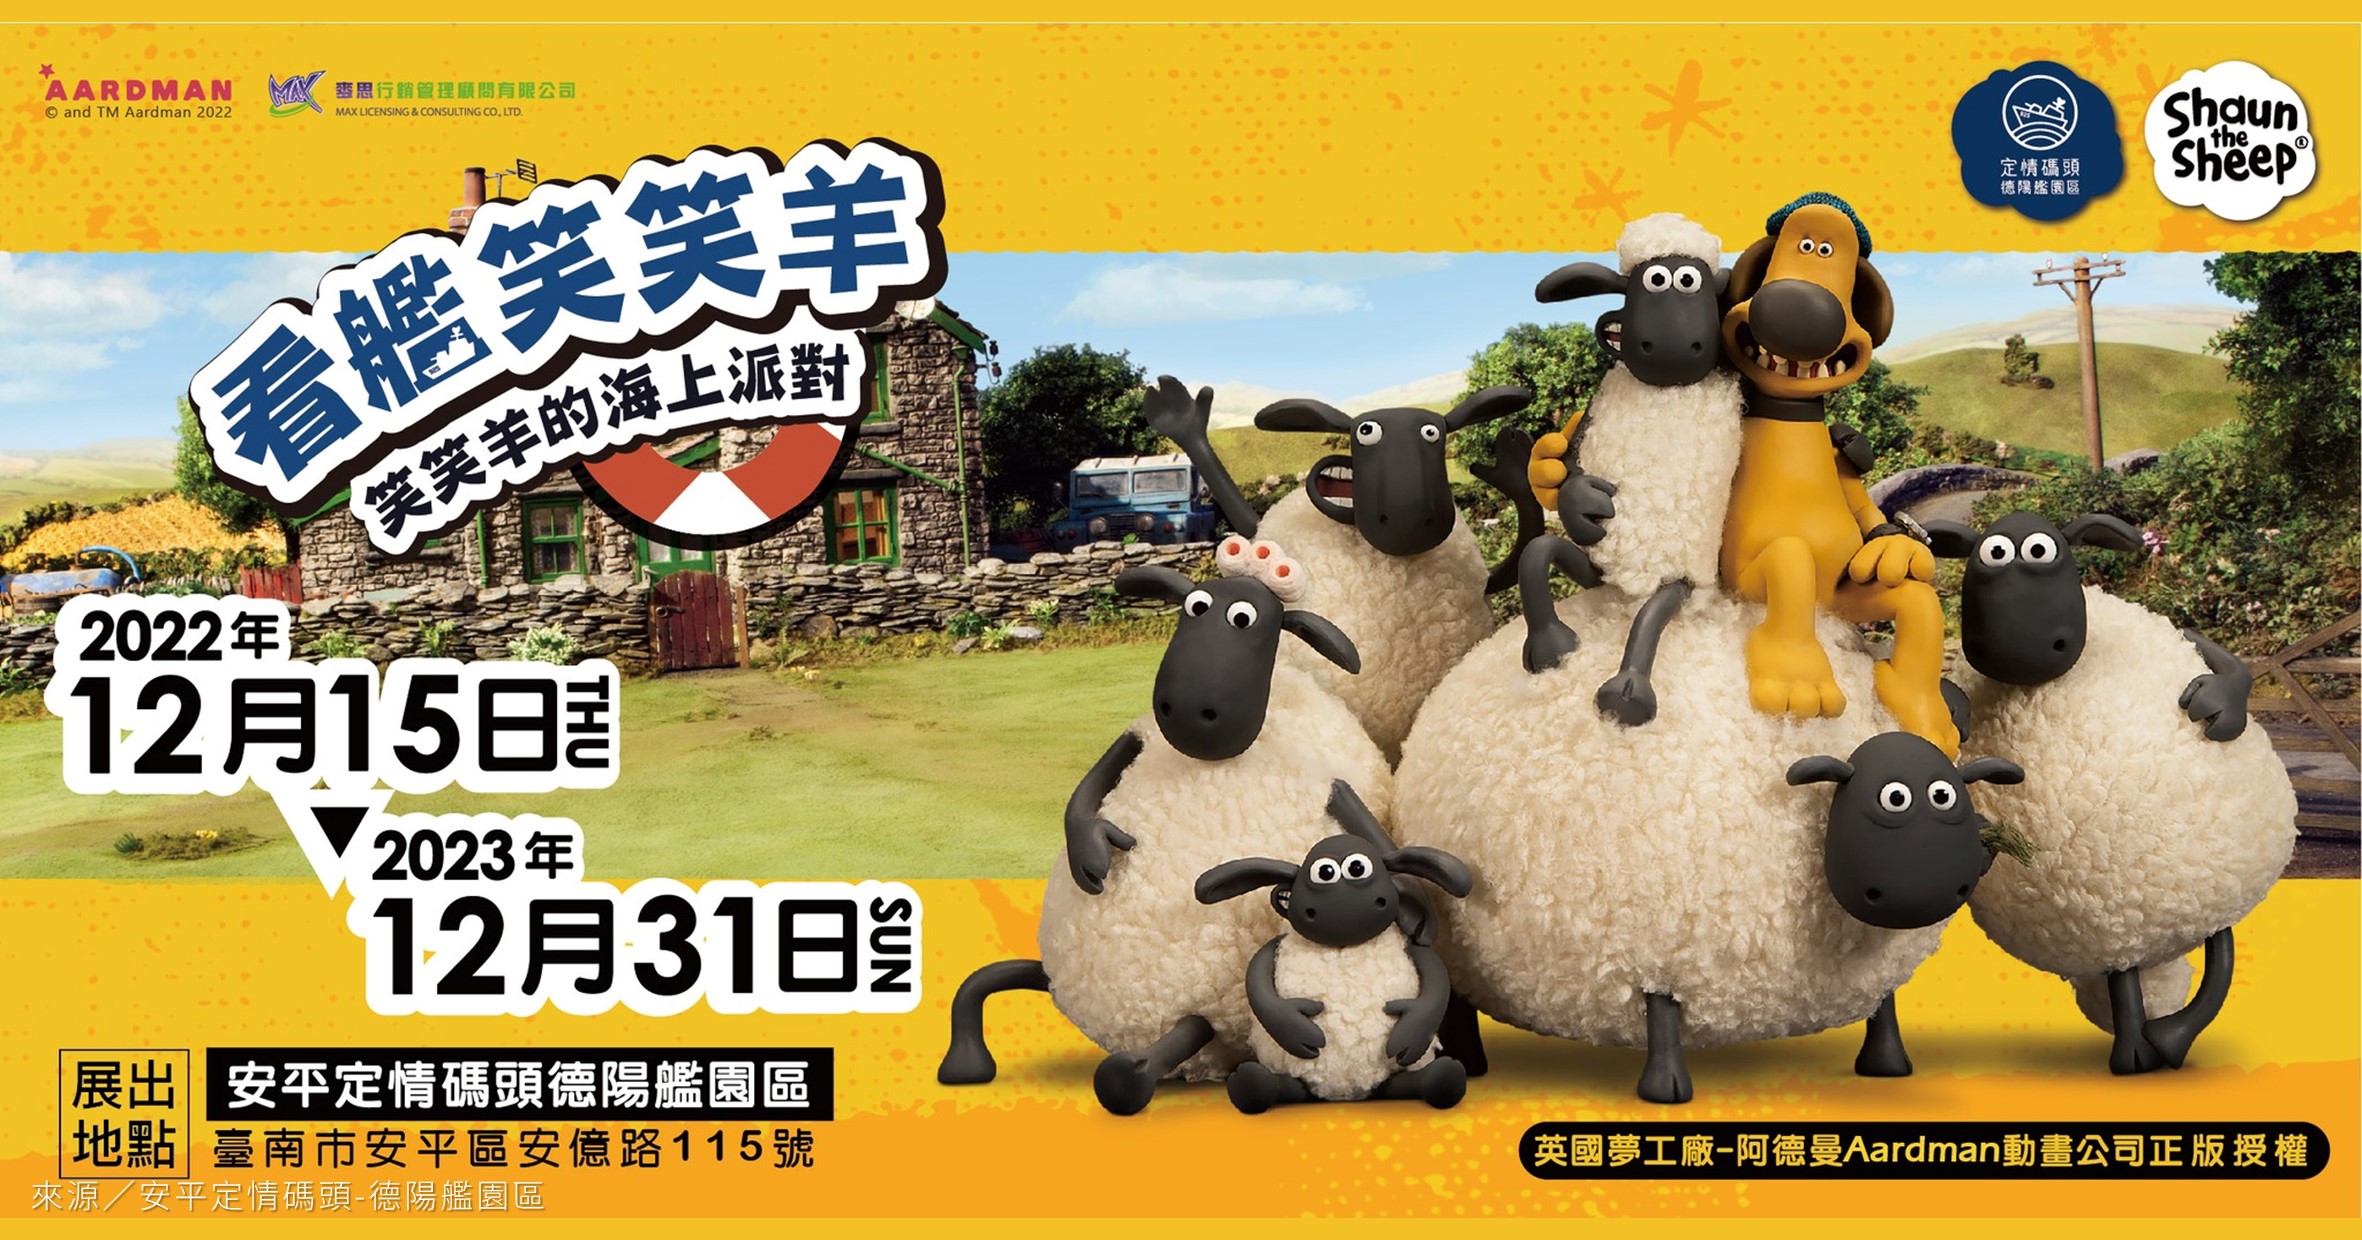 台南展覽 看艦笑笑羊 笑笑羊的海上派對特展 漫步時光